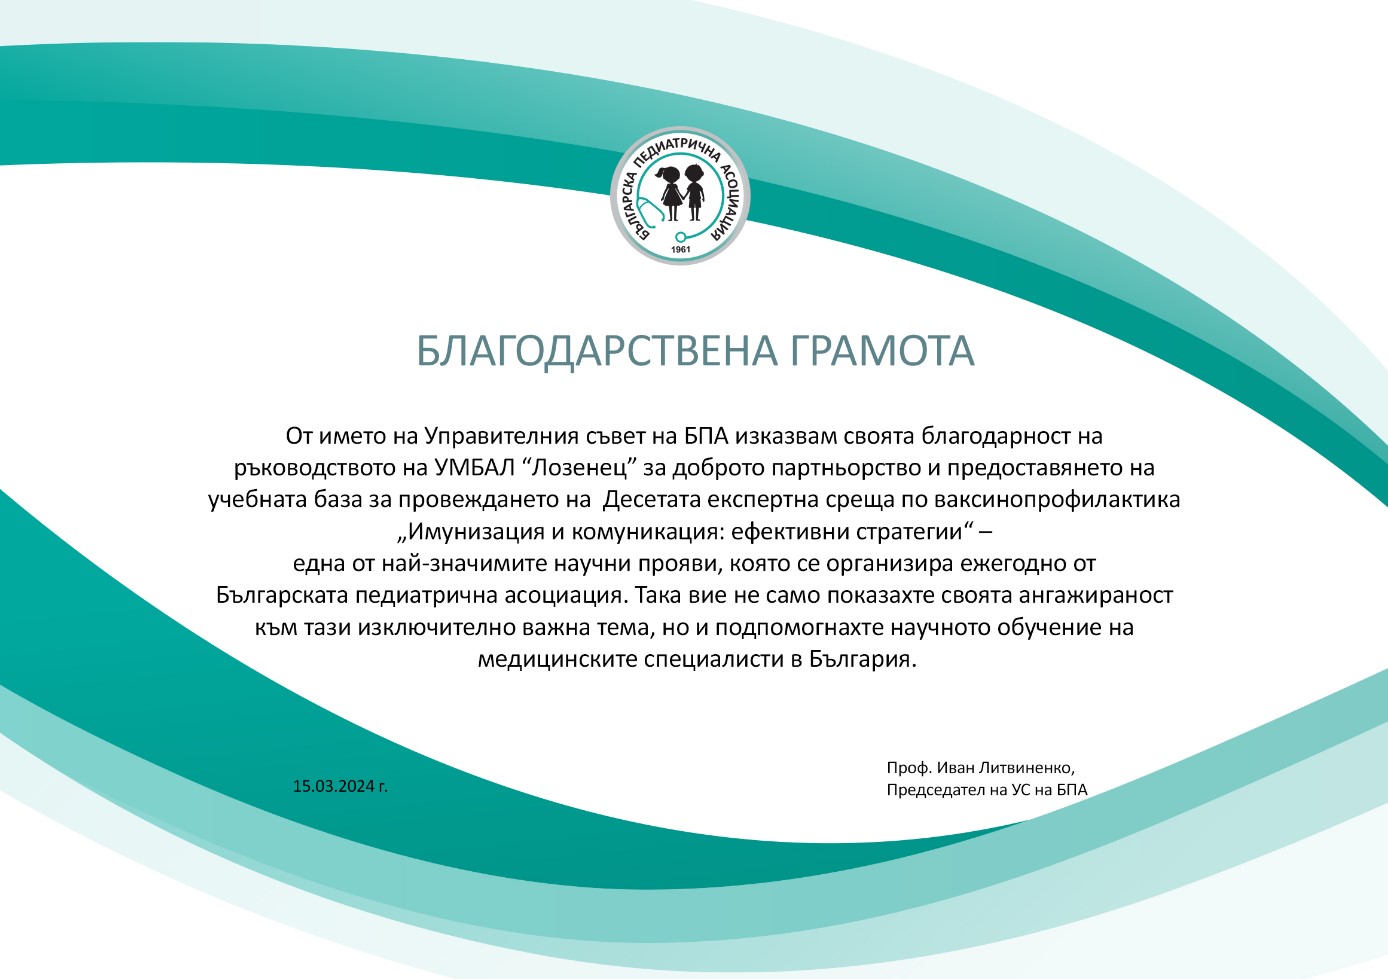 Благодарствена грамота от председателя на Българската педиатрична асоциация за домакинството  на Десетата експертна среща по ваксинопрофилактика 